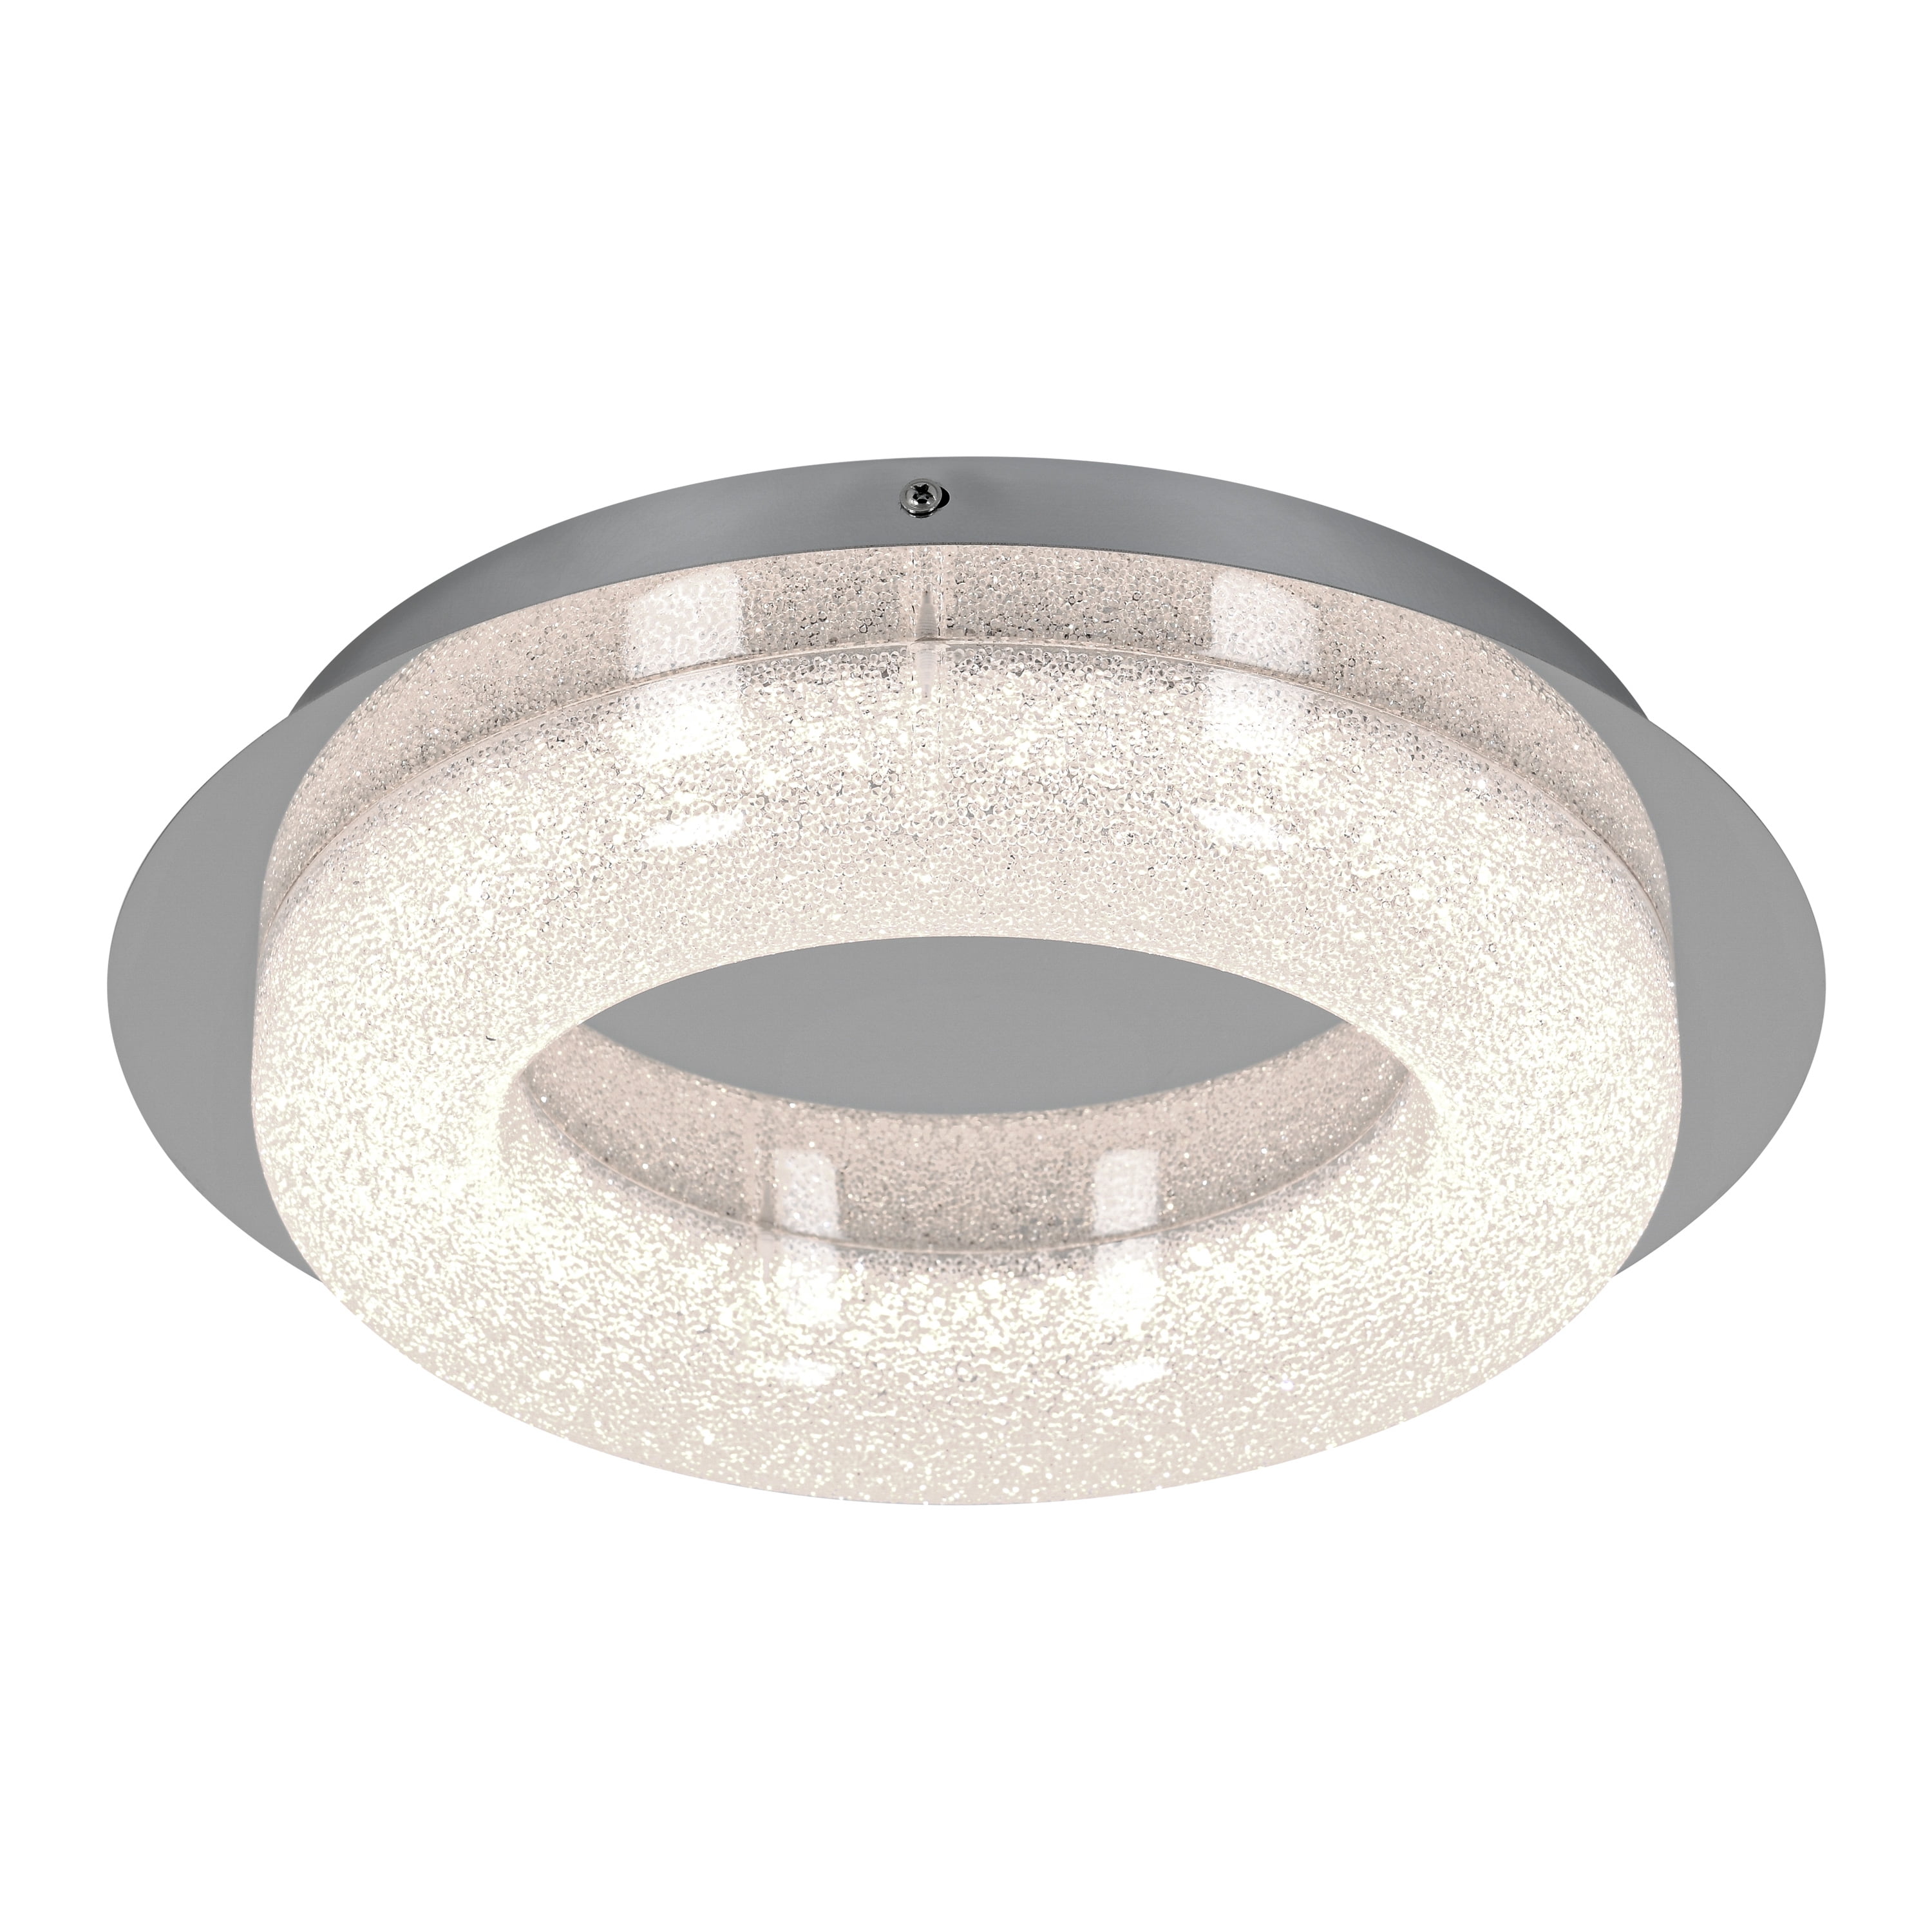 Artika Famous Ceiling One Light Integrated LED Flush Mount Light Fixture,  Chrome Finish